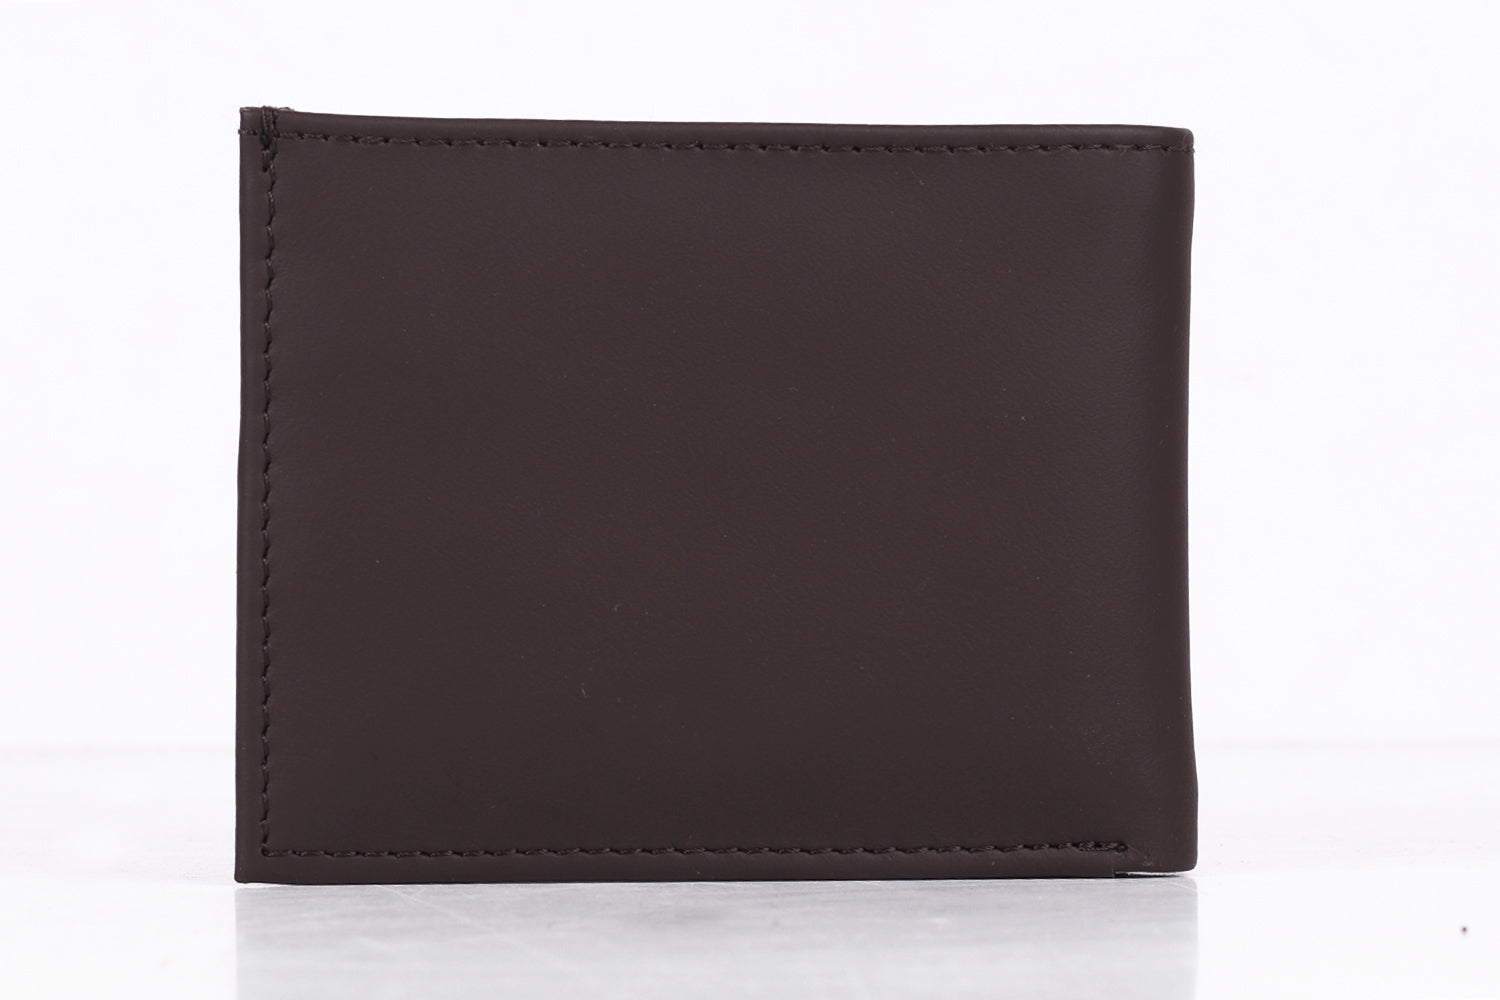 slim leather wallet for men online india